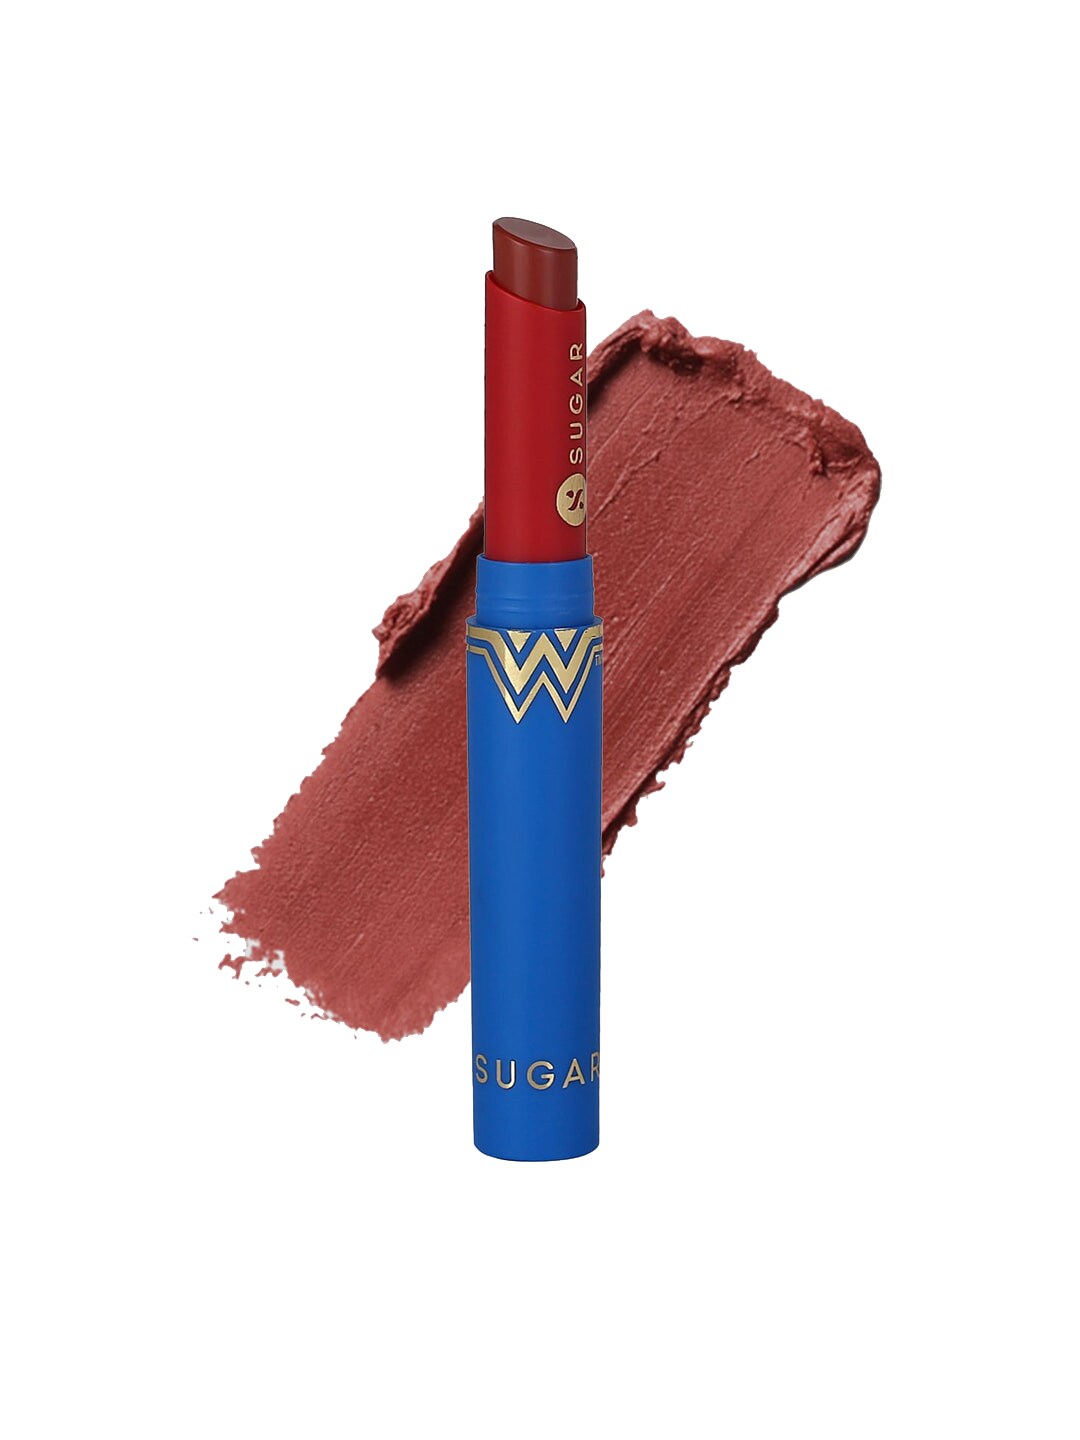 SUGAR X Wonder Woman Creamy Matte Lipstick - 06 Ballerina Belle - 2 g Price in India